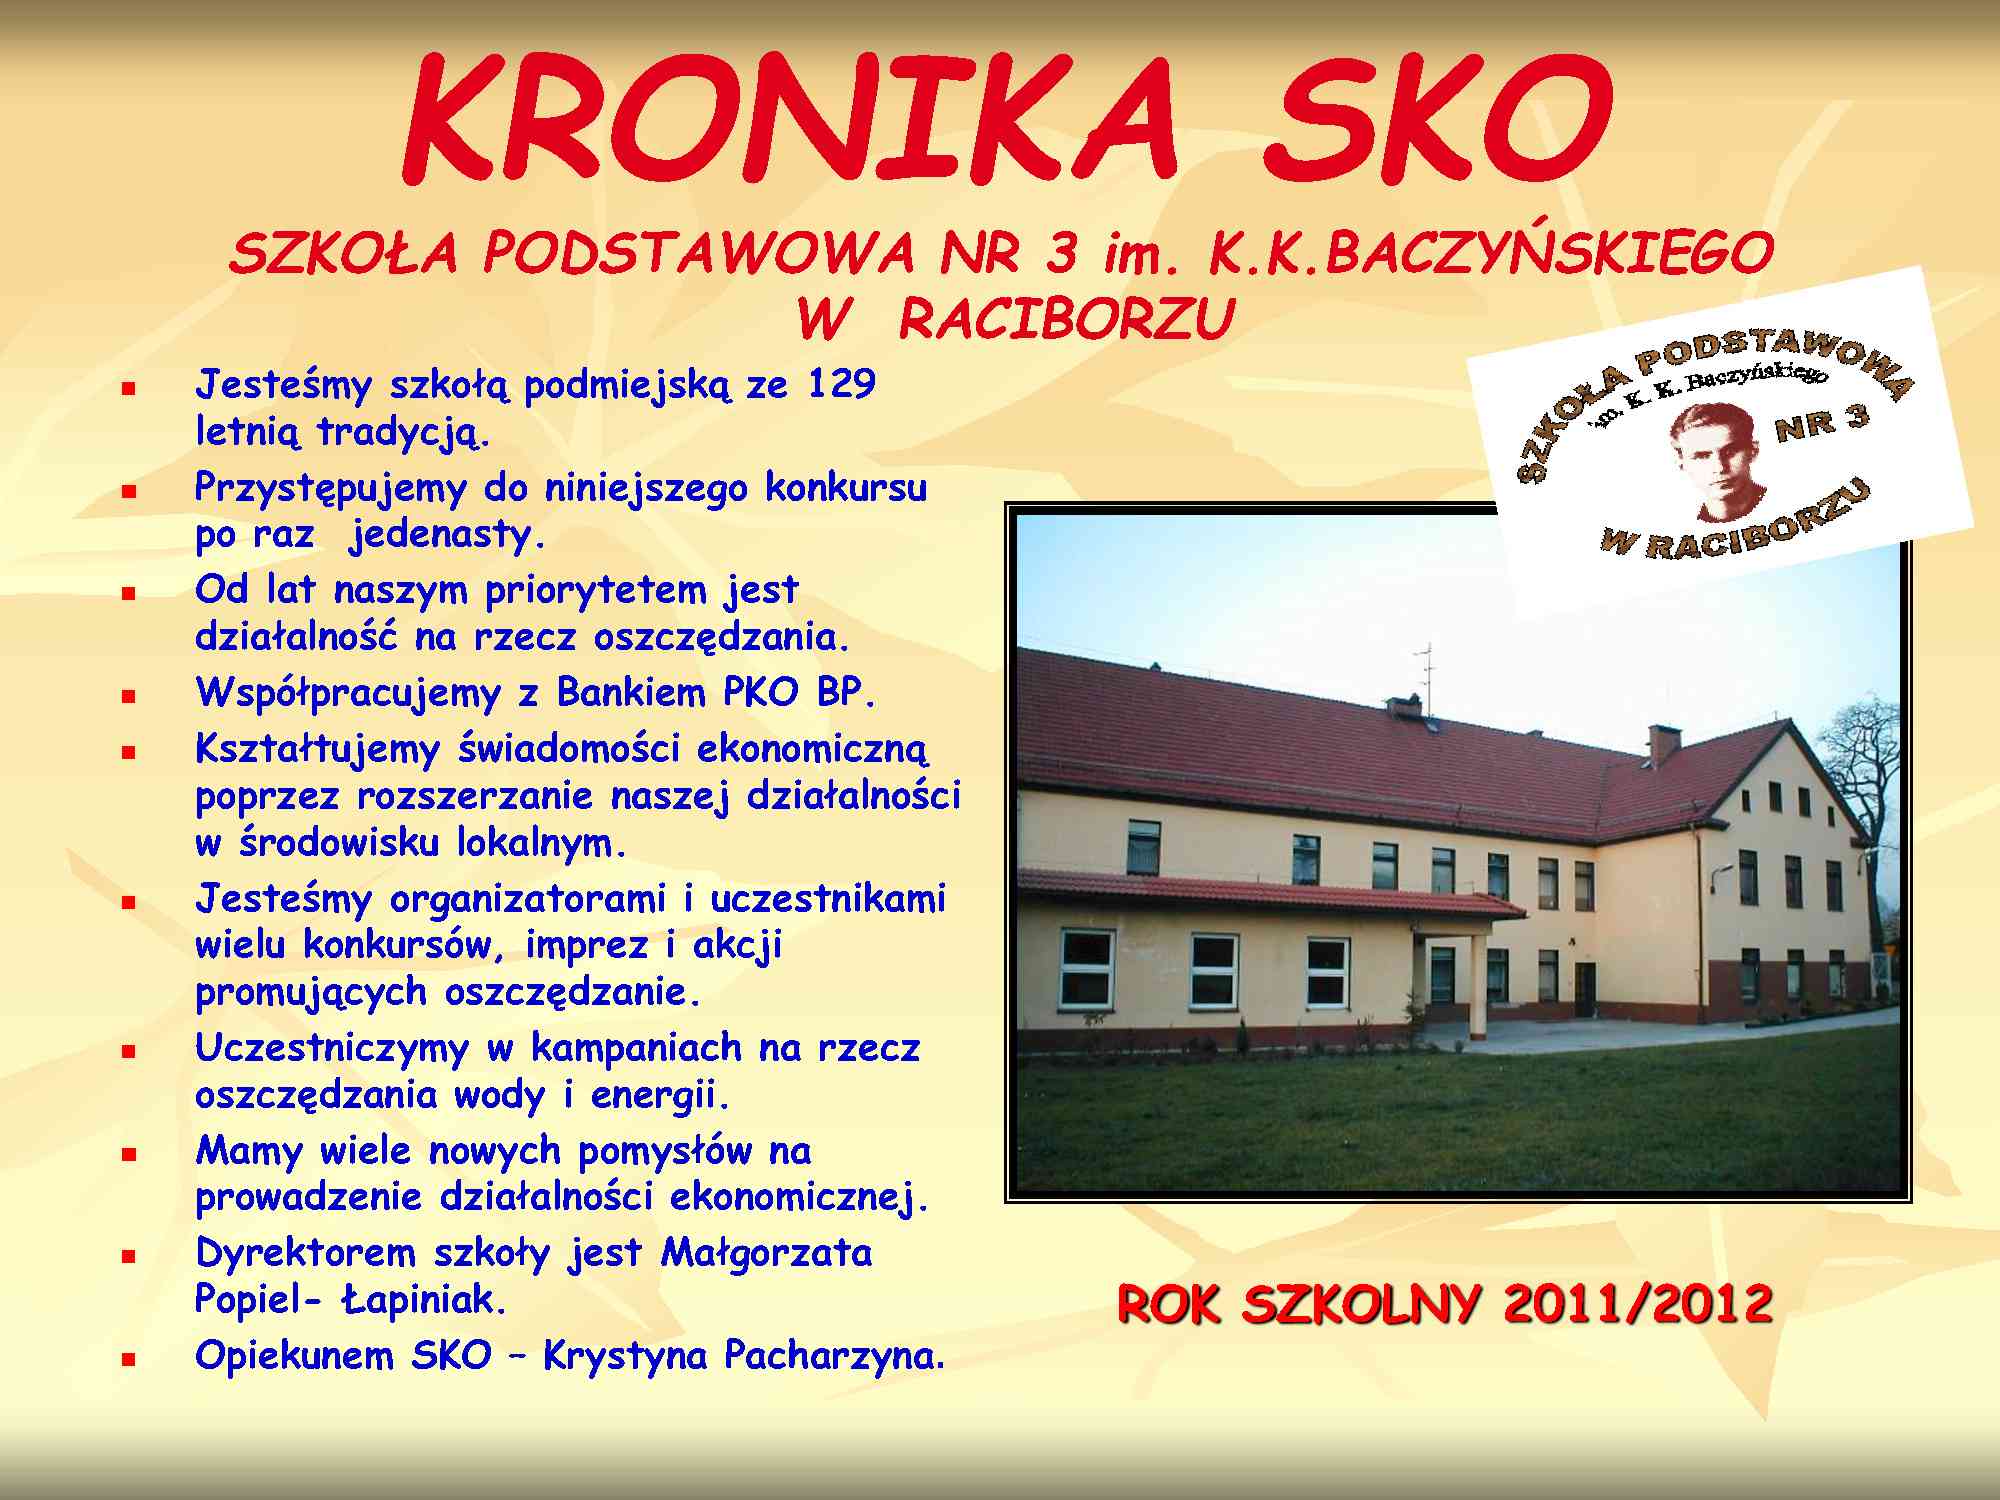 Szkoła Podstawowa nr 3 im. K.K. Baczyńskiego w Raciborzu